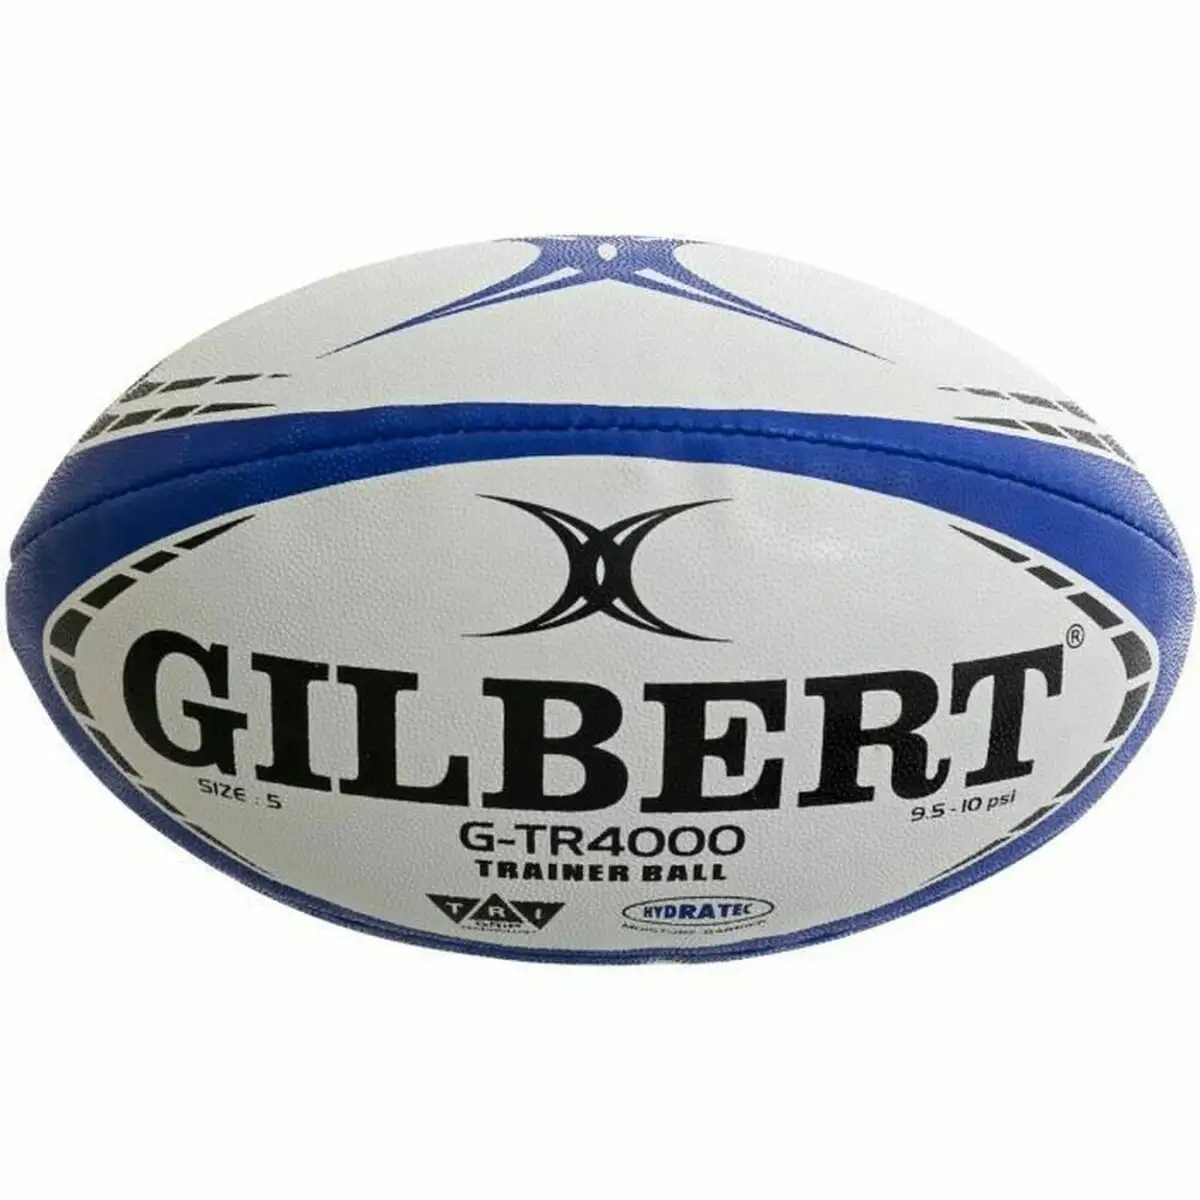 Ballon de rugby gilbert g tr4000 trainer multicouleur 3 bleu blue marine_2910. DIAYTAR SENEGAL - Où Chaque Achat Raconte une Histoire. Explorez notre boutique en ligne et créez votre propre narration à travers notre diversité de produits, chacun portant une signification unique.